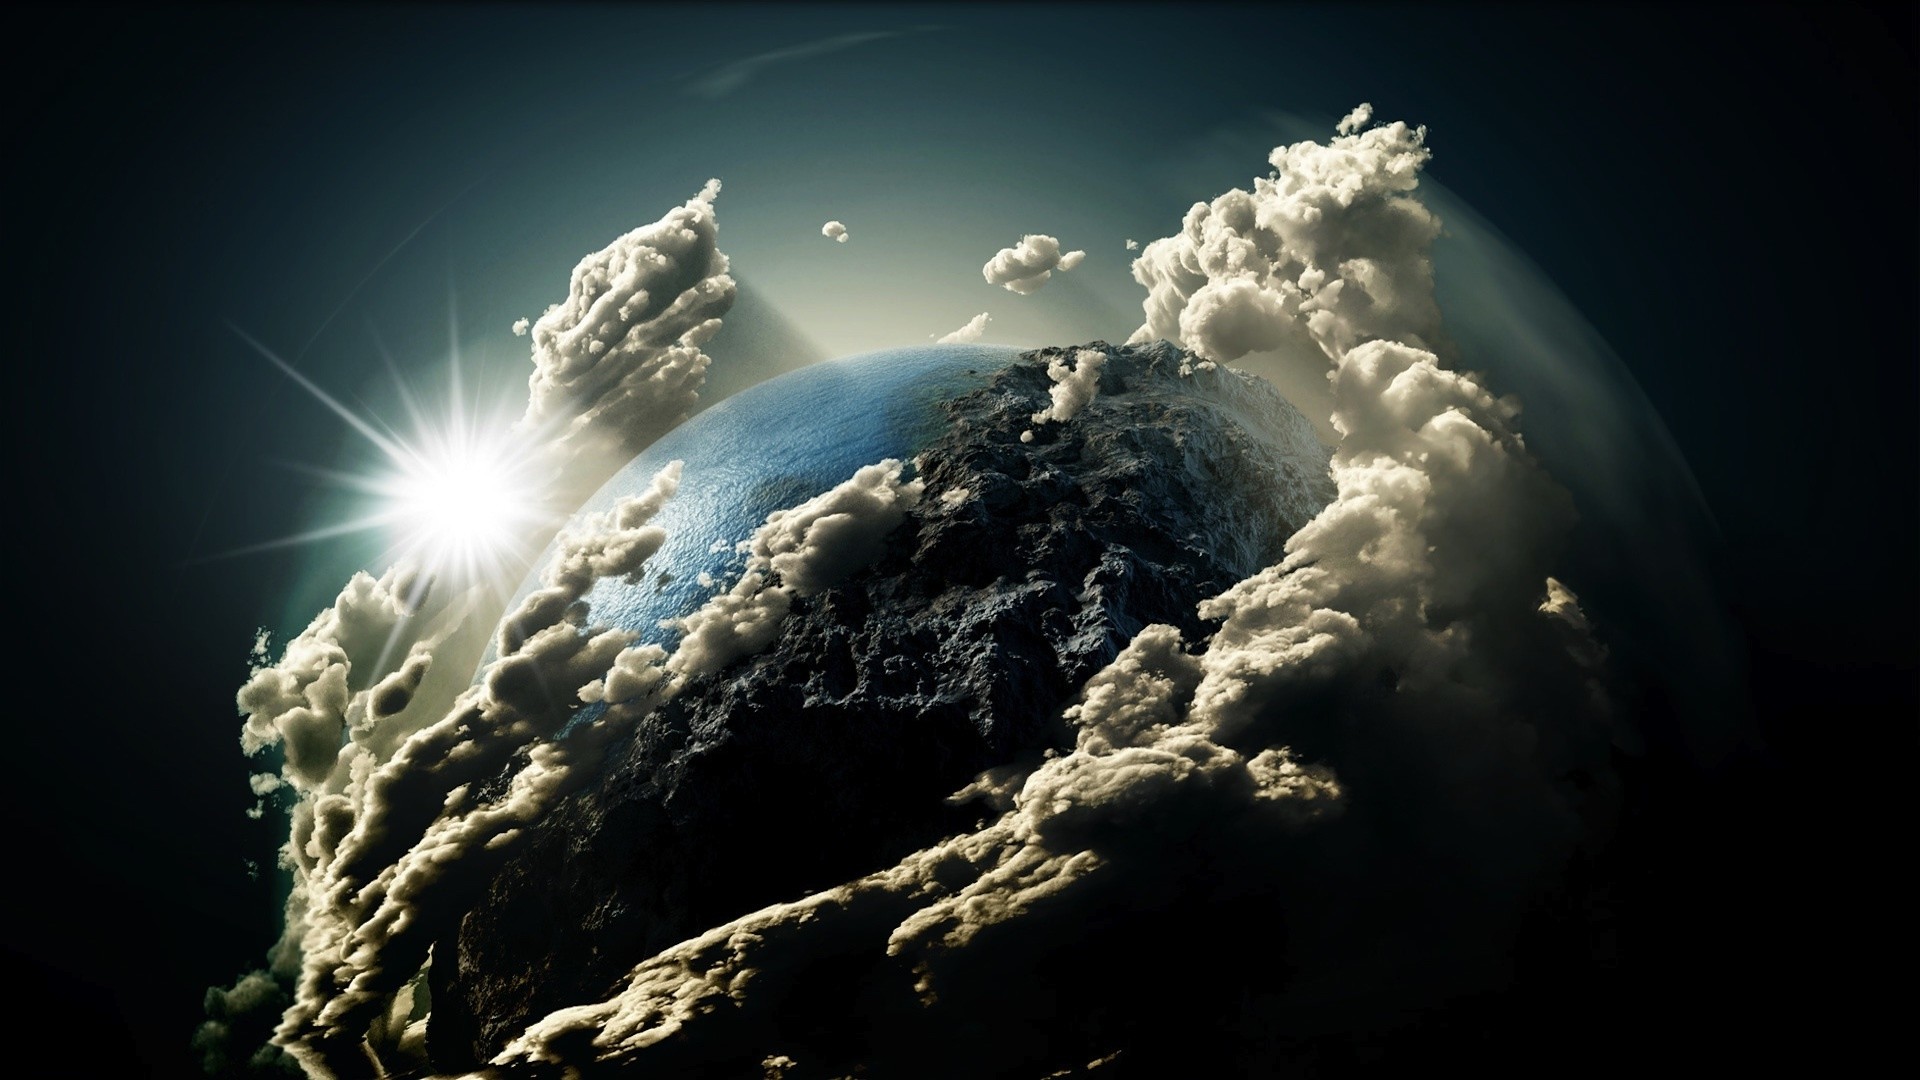 Mây trái đất mang đến cho chúng ta cảm giác như thực sự đang ngồi trên phi thuyền nhìn ngắm Trái Đất. Từ trên cao, những đám mây nhiều màu sắc vừa mềm mại, vừa mạnh mẽ trông như những bức tranh họa tiết thiên nhiên đầy sức sống.